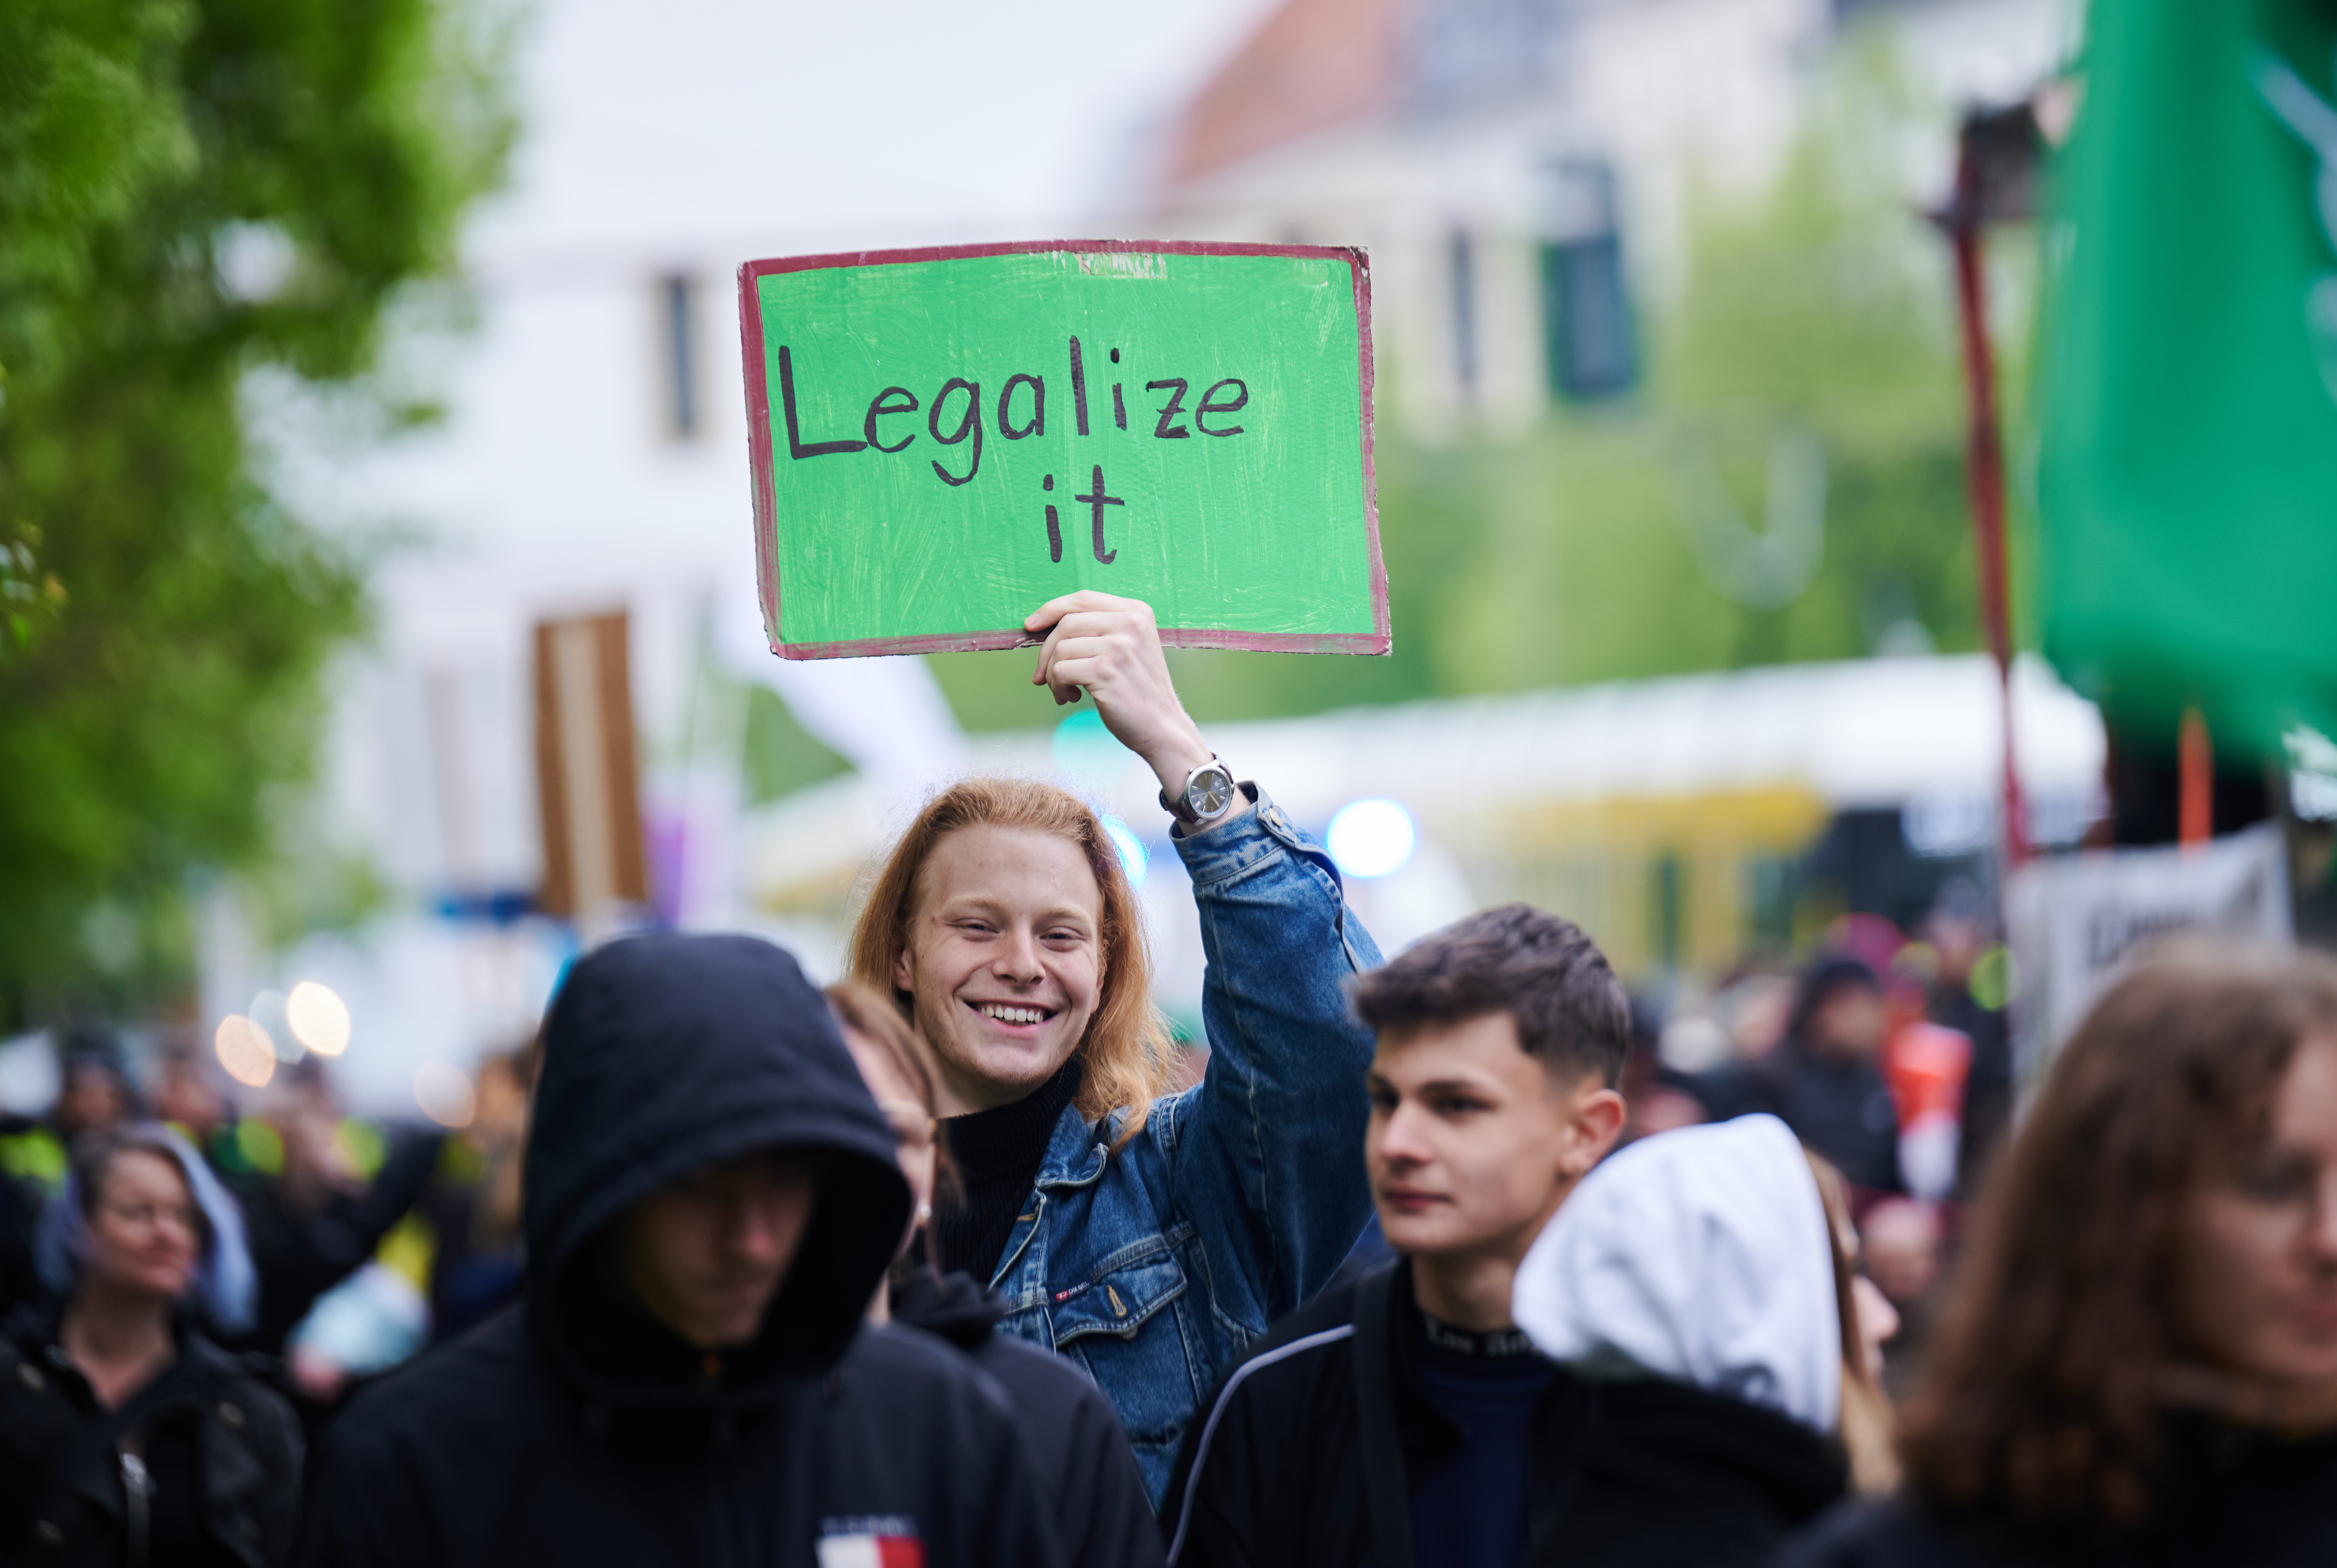 Alemania espera recibir una lluvia de millones con la legalización del cannabis